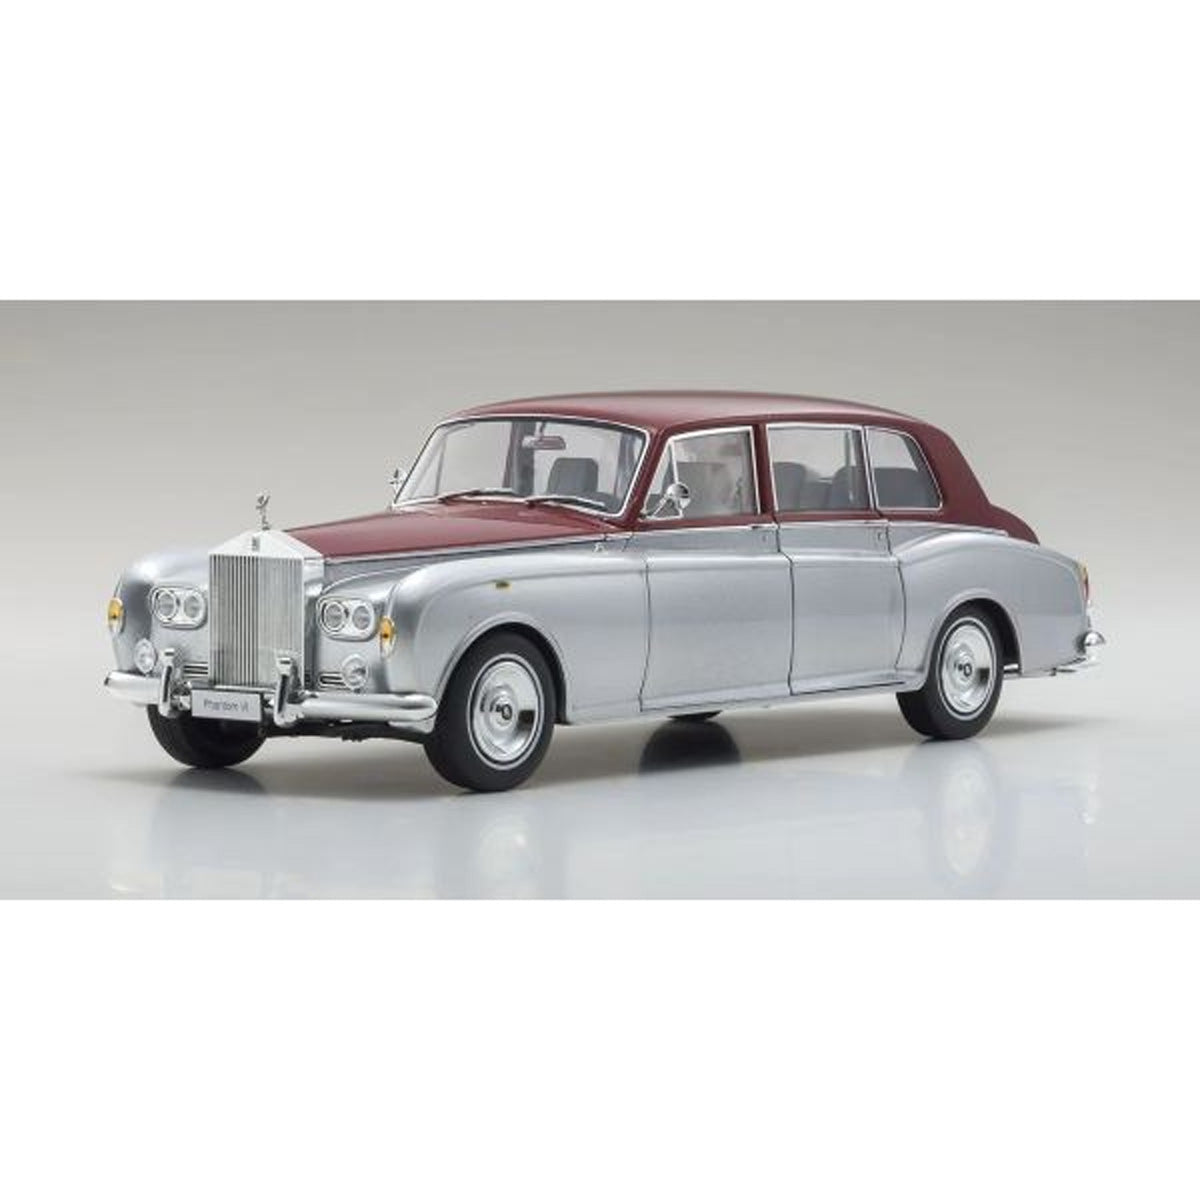 Rolls-Royce Phantom VI Silver/Red - 1:18 Scale Diecast Model Car